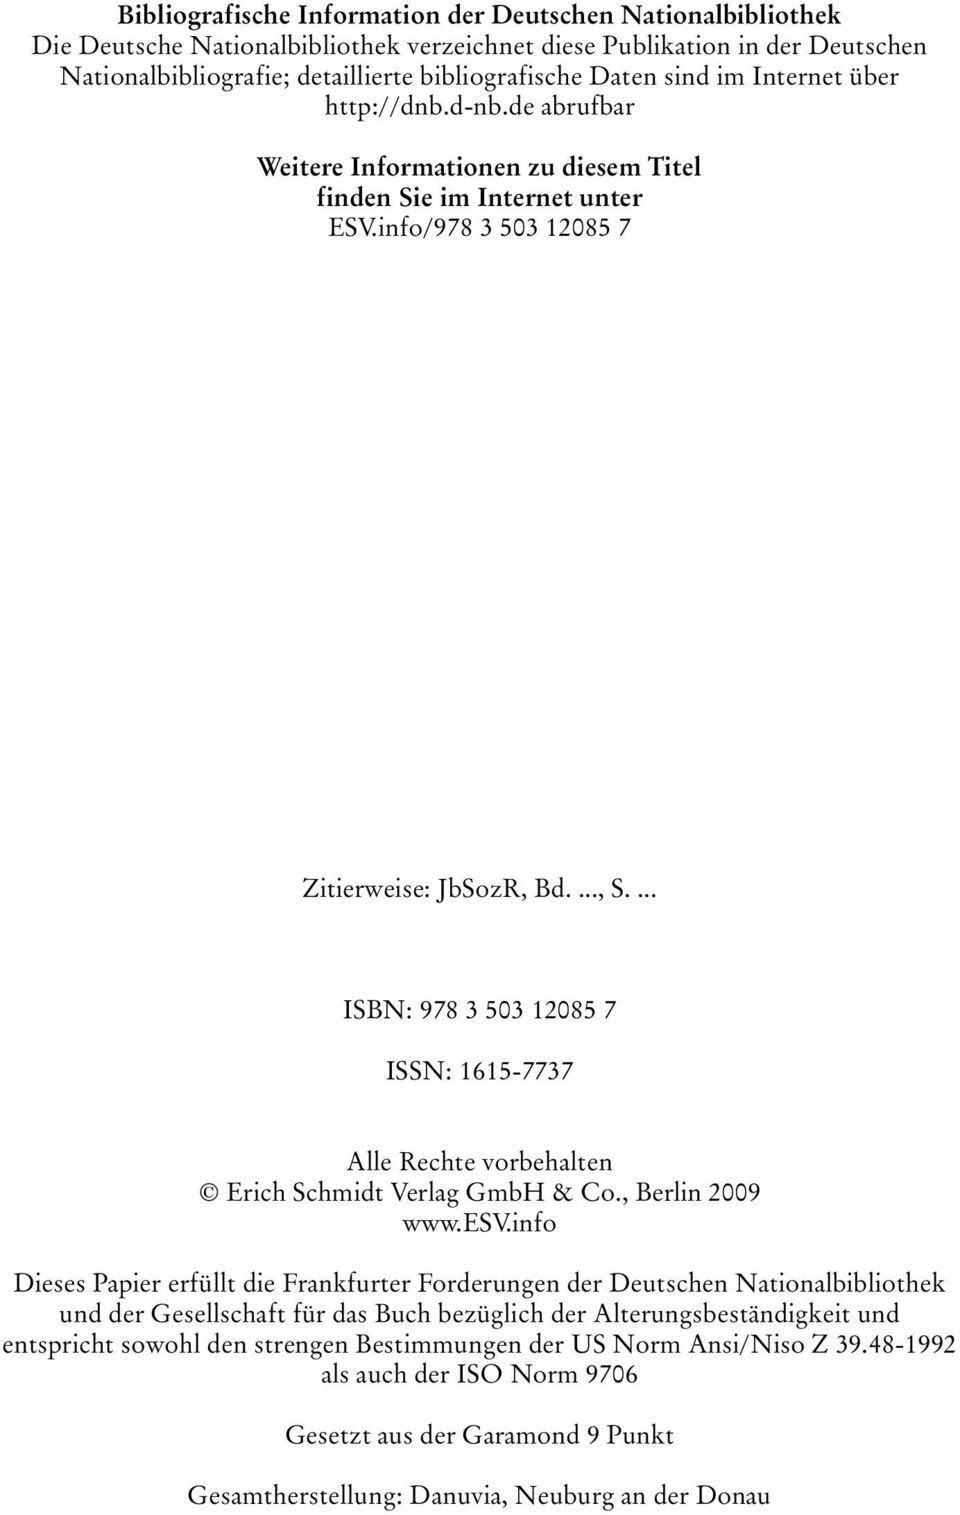 ... ISBN: 978 3 503 12085 7 ISSN: 1615-7737 Alle Rechte vorbehalten Erich Schmidt Verlag GmbH & Co., Berlin 2009 www.esv.